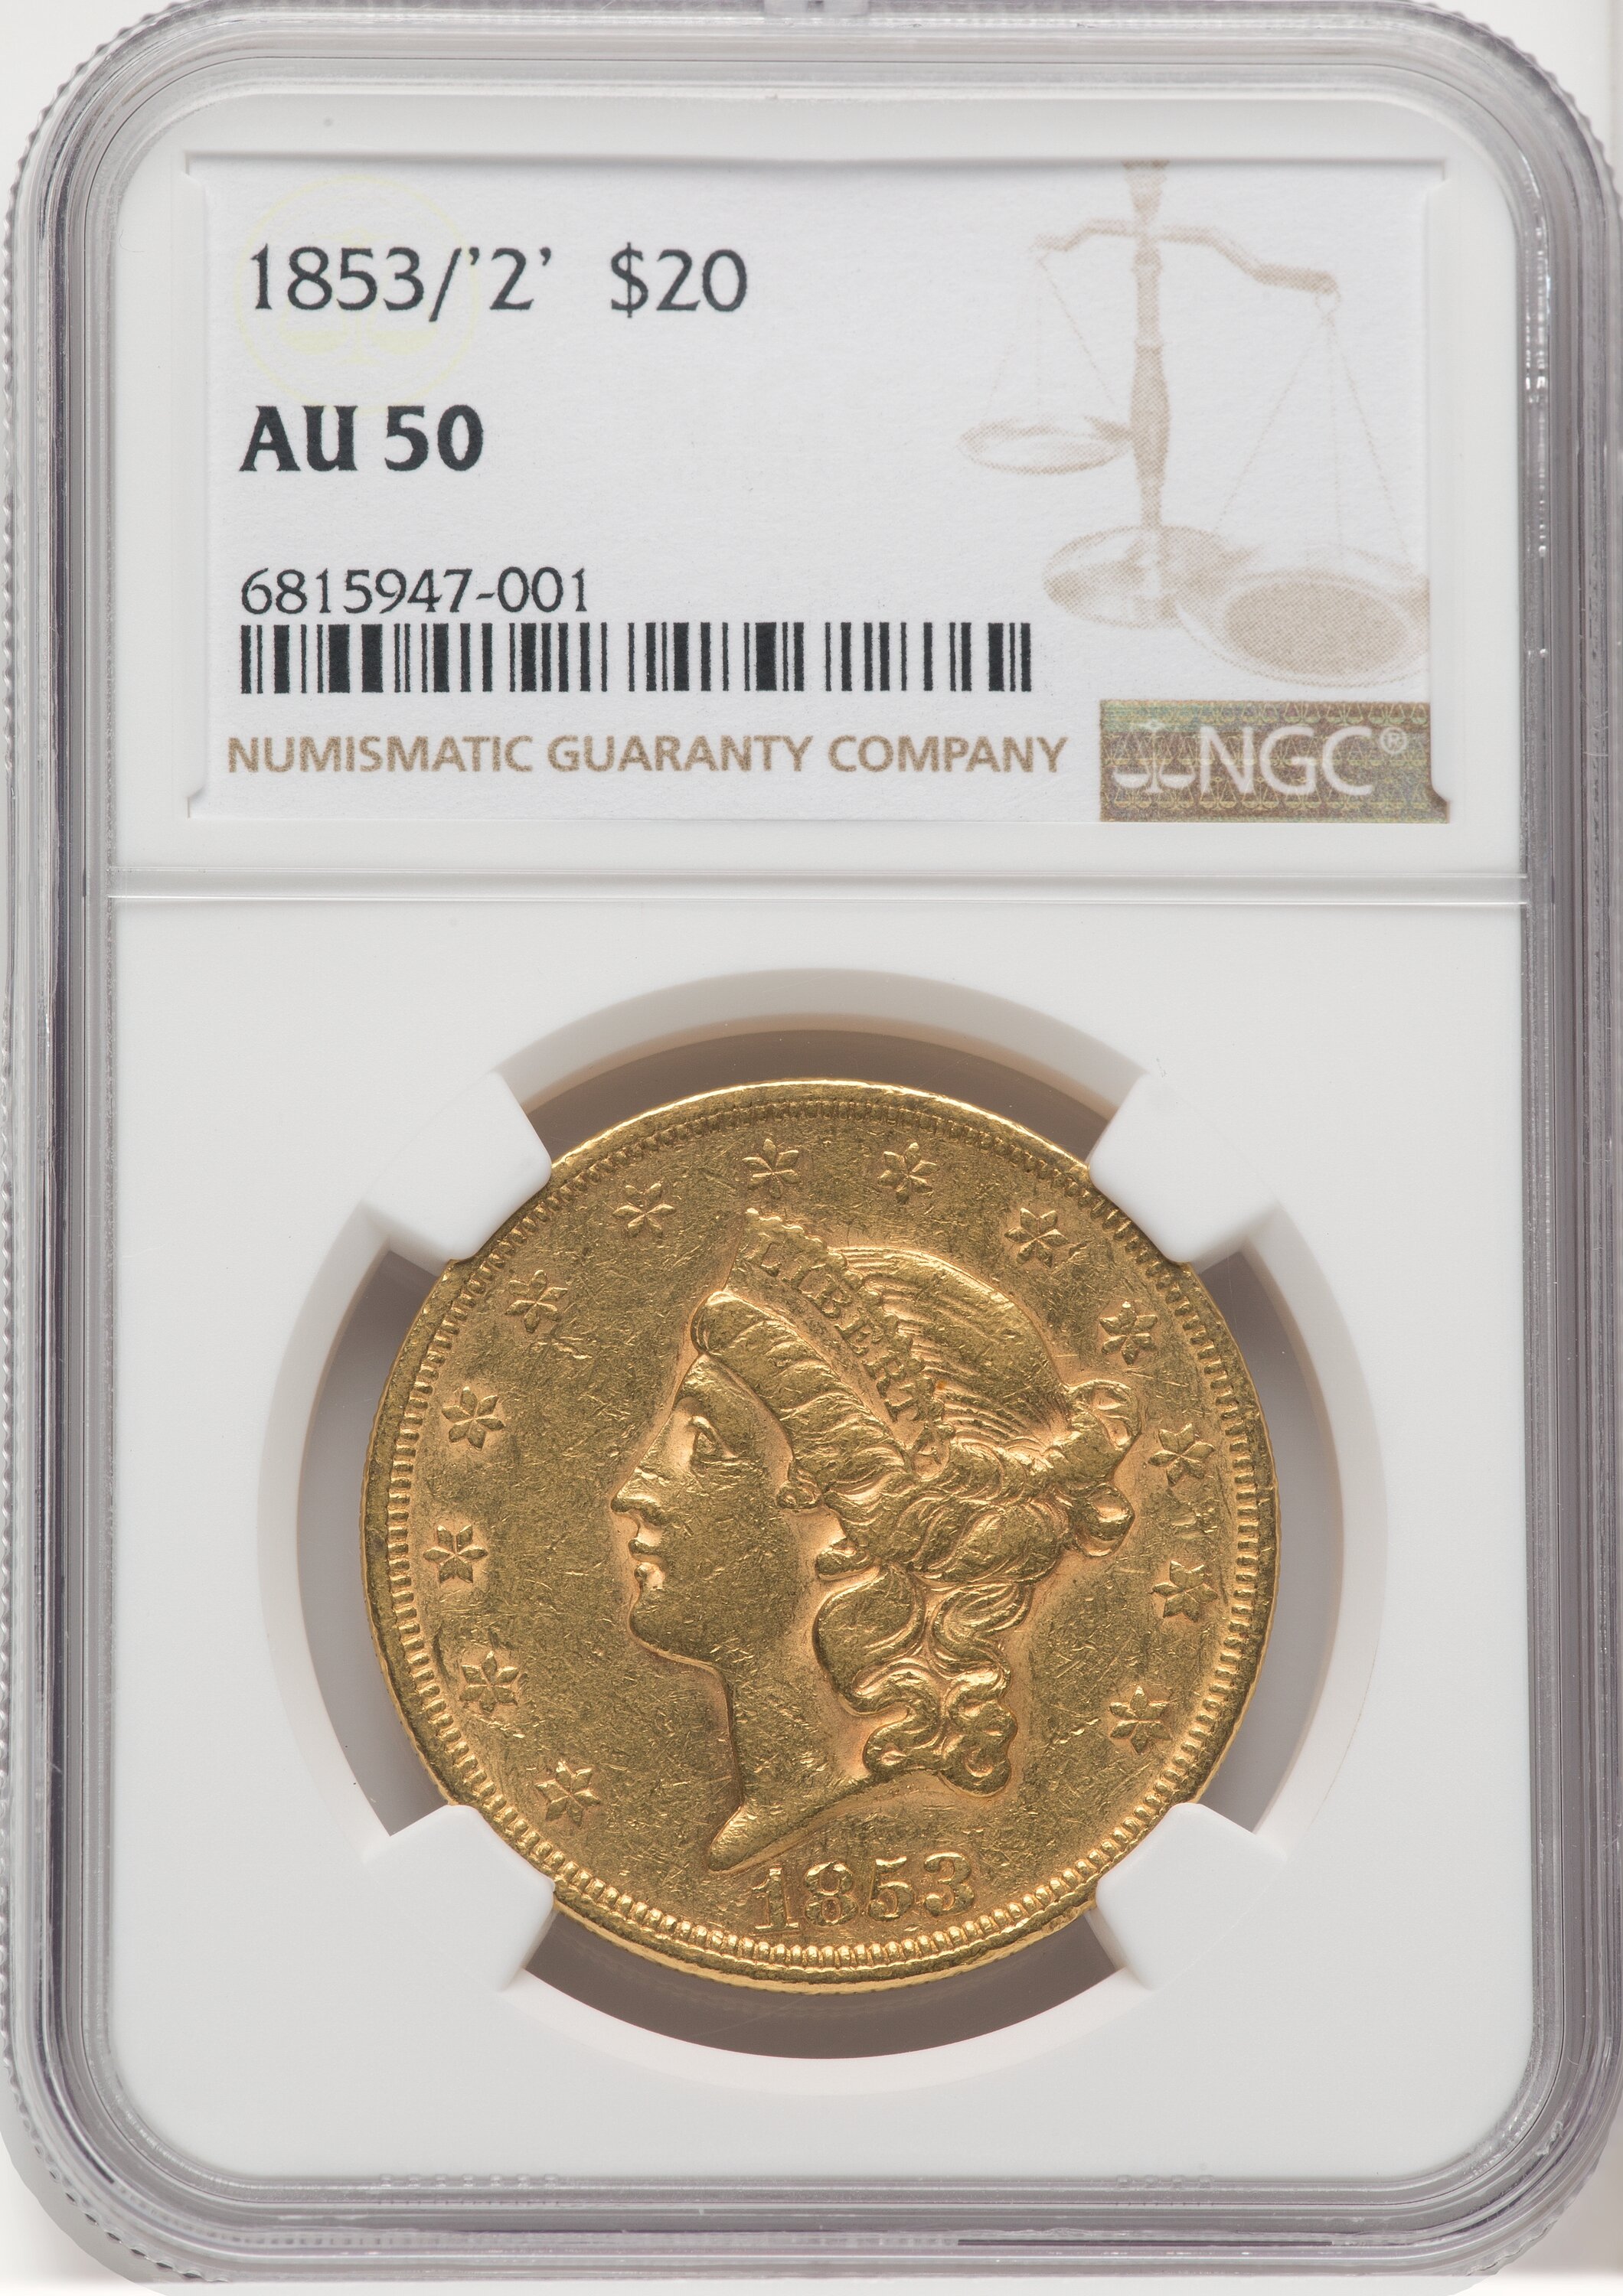 1853/2 $20 50 NGC